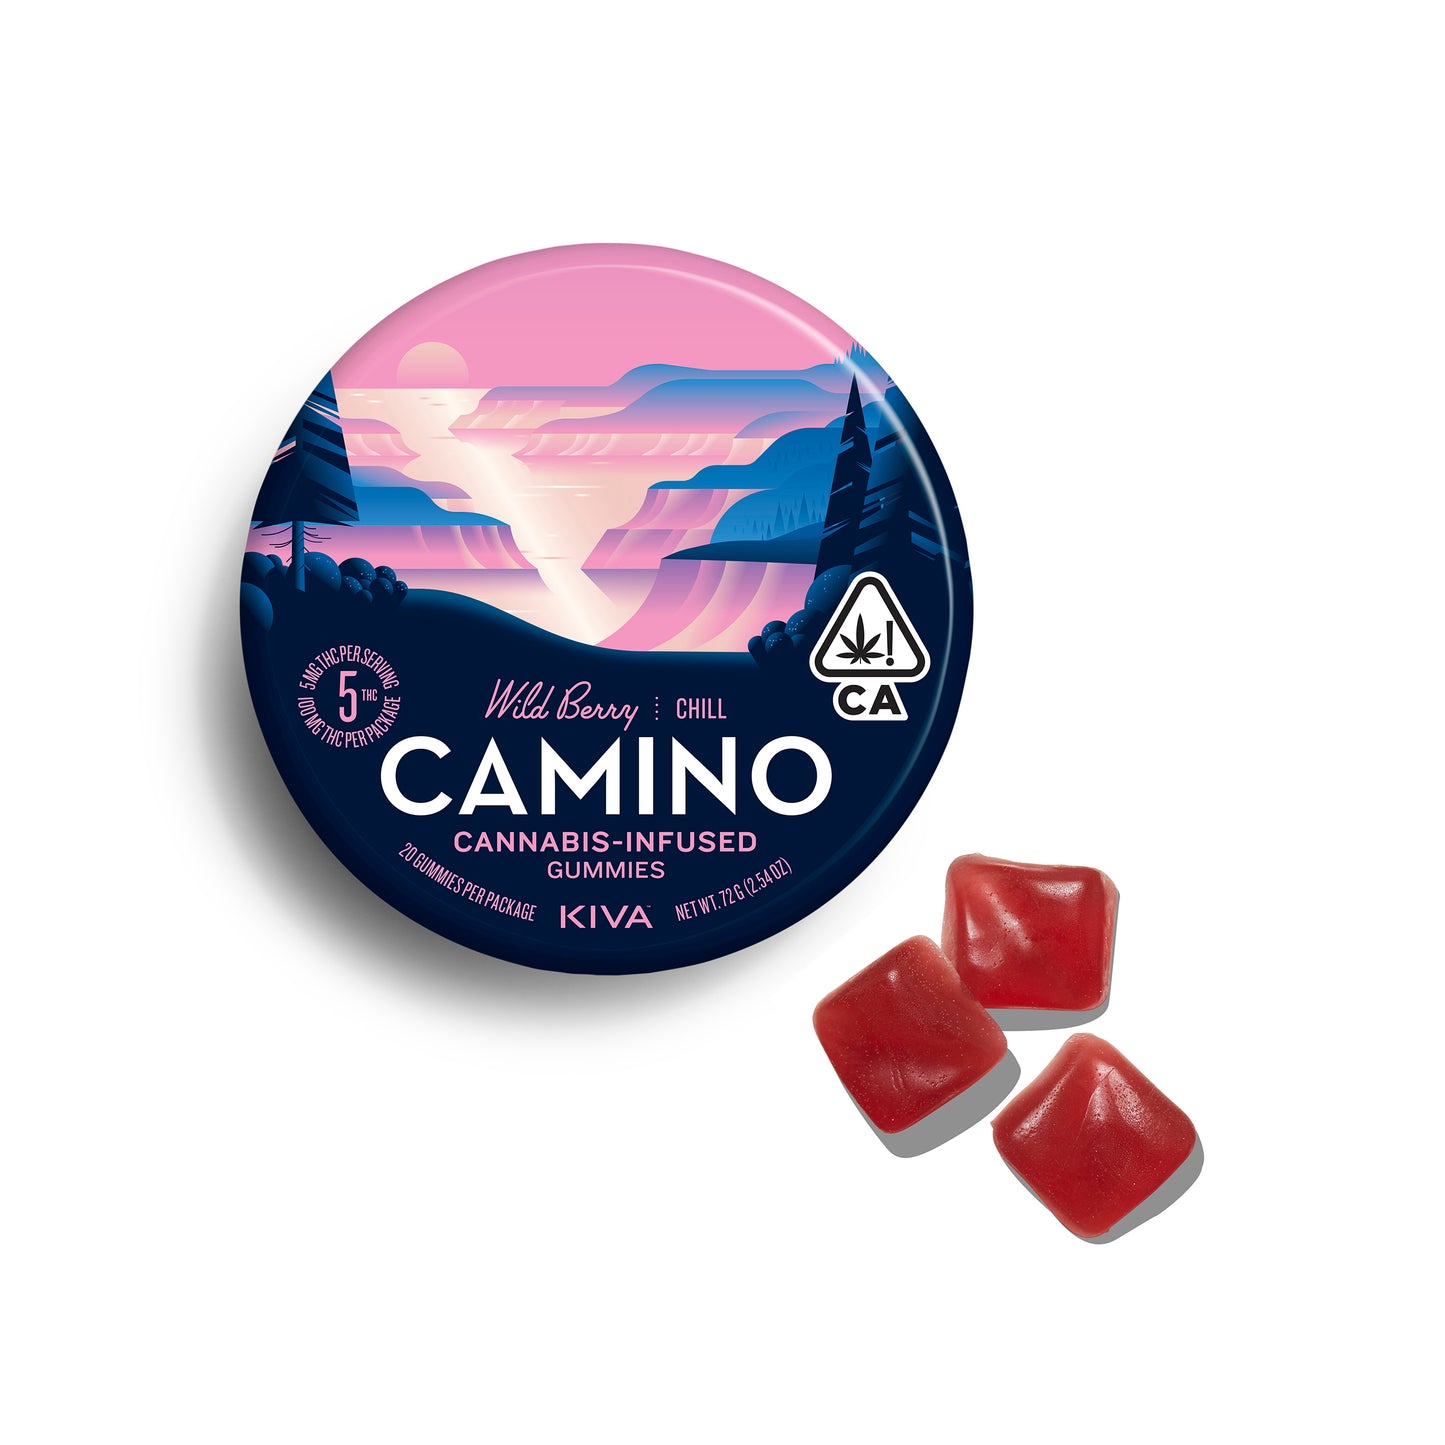 Camino Wild Berry "Chill" Gummies